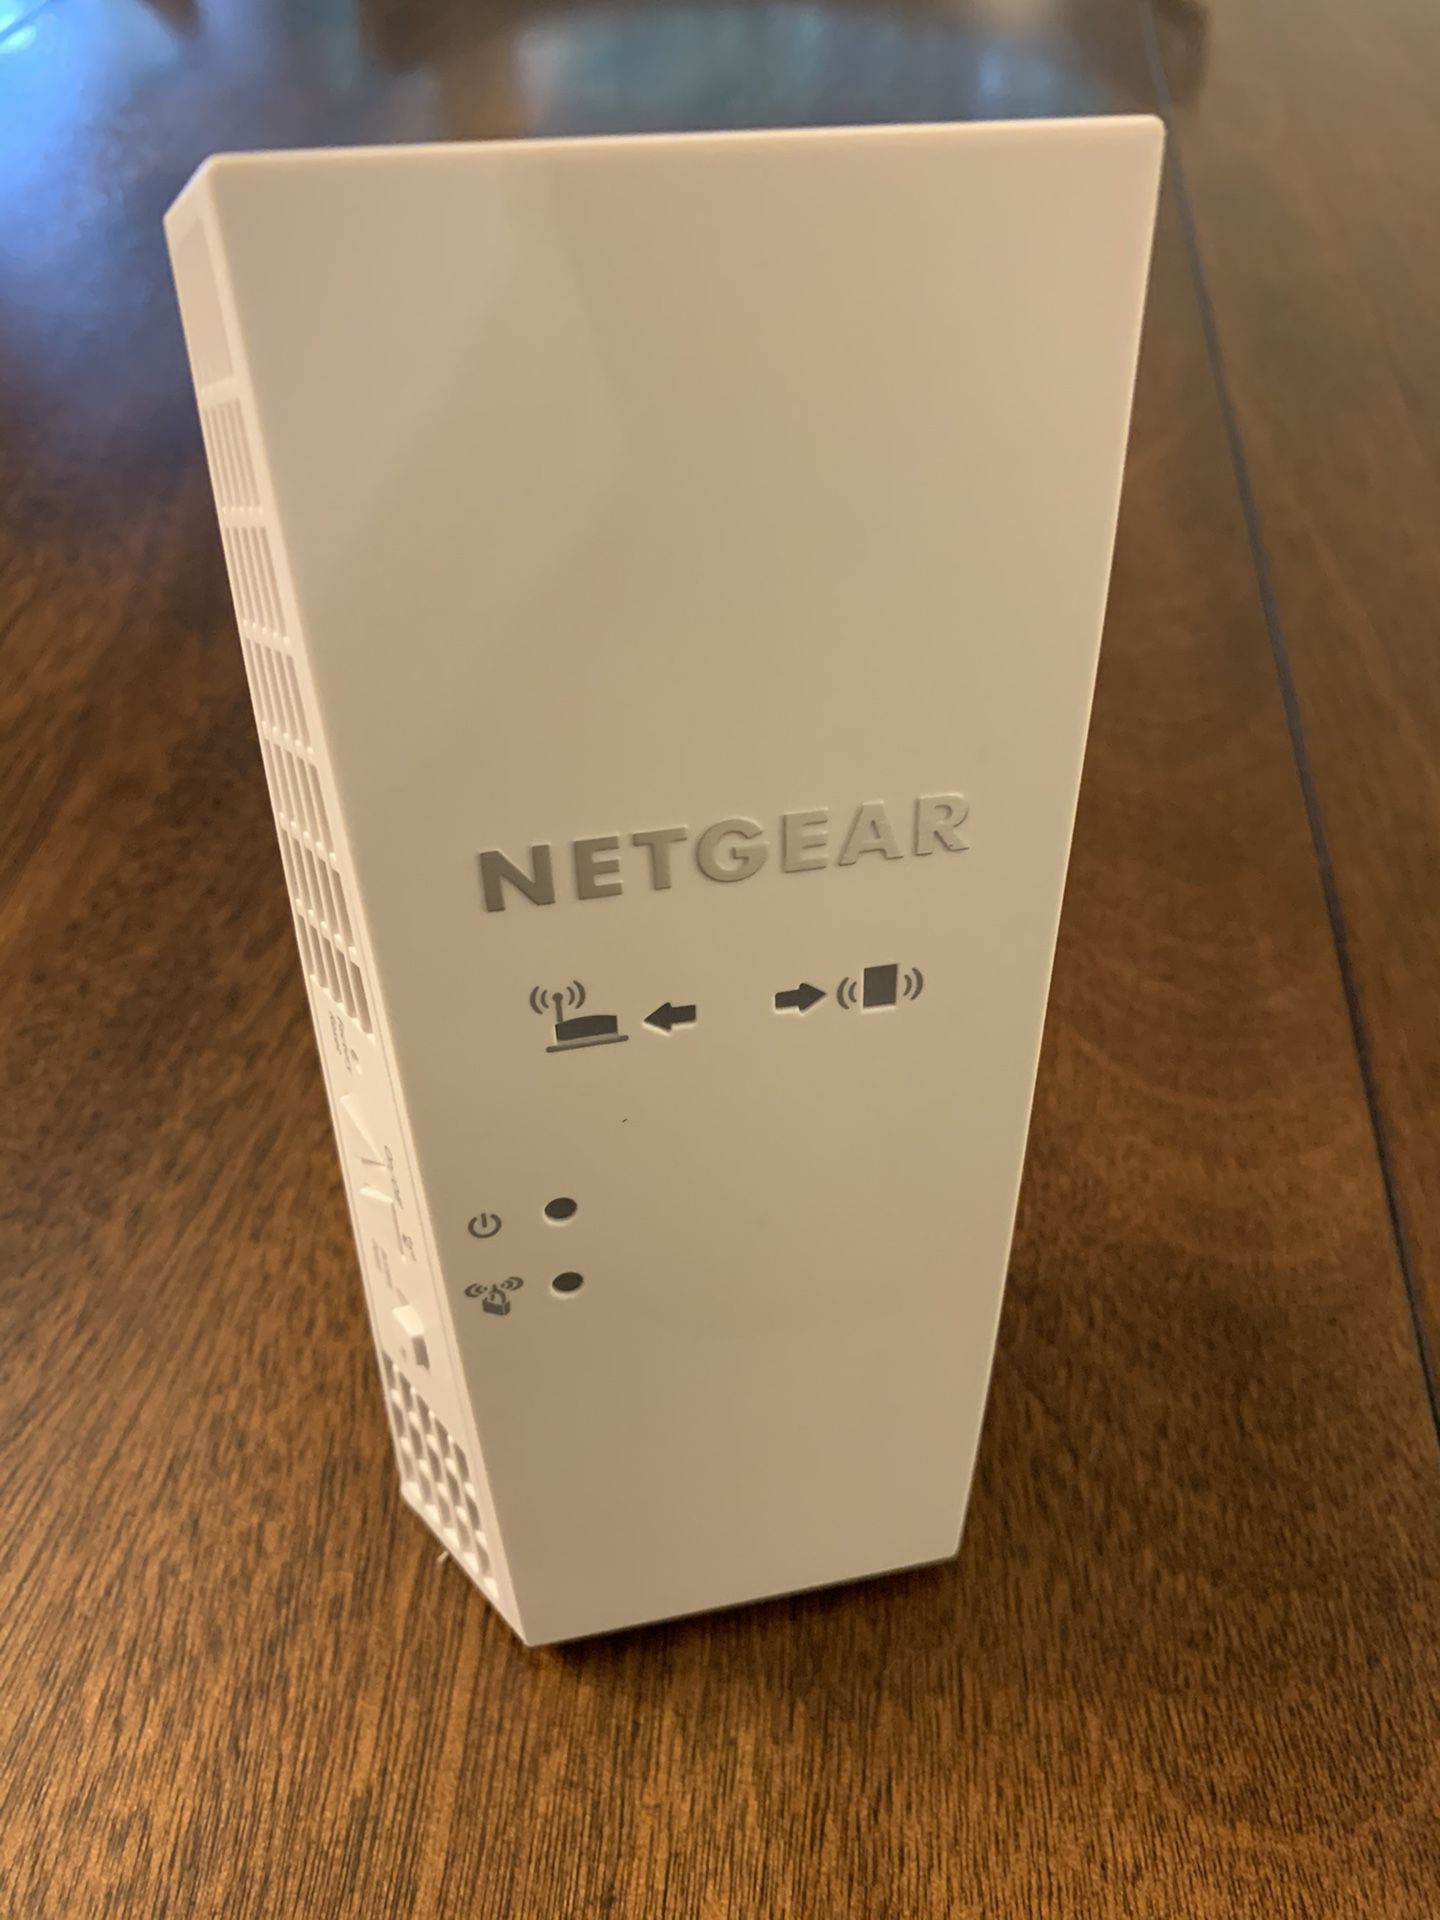 Netgear Wireless Extender - Model EX7300